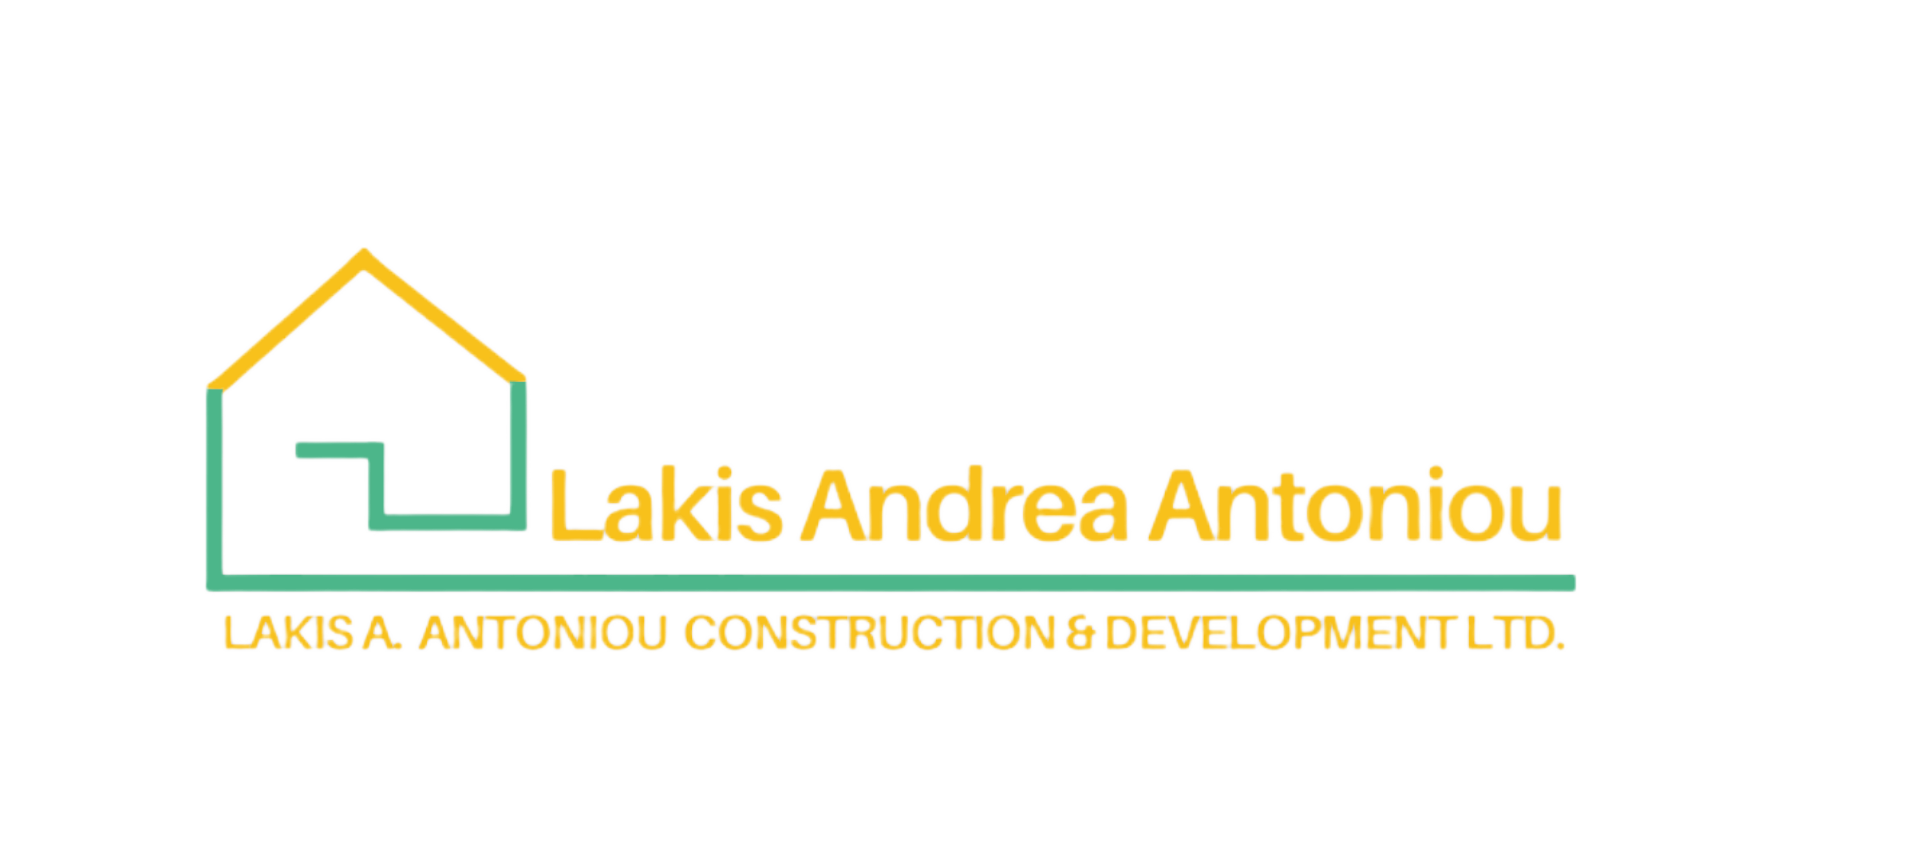 Lakis A. Antoniou Construction & Development LTD.